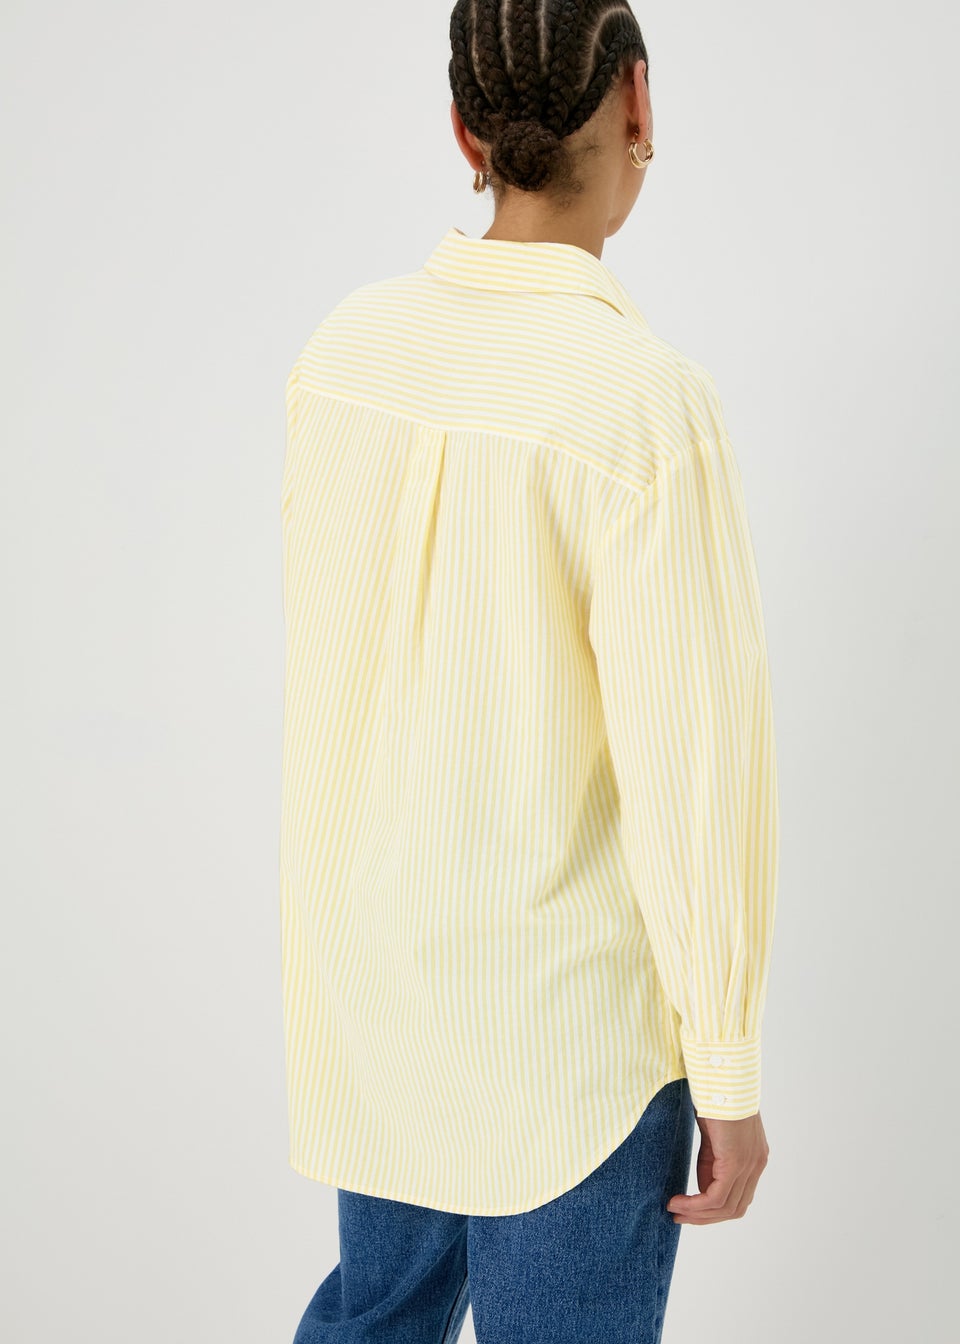 Yellow Stripe Cotton Shirt